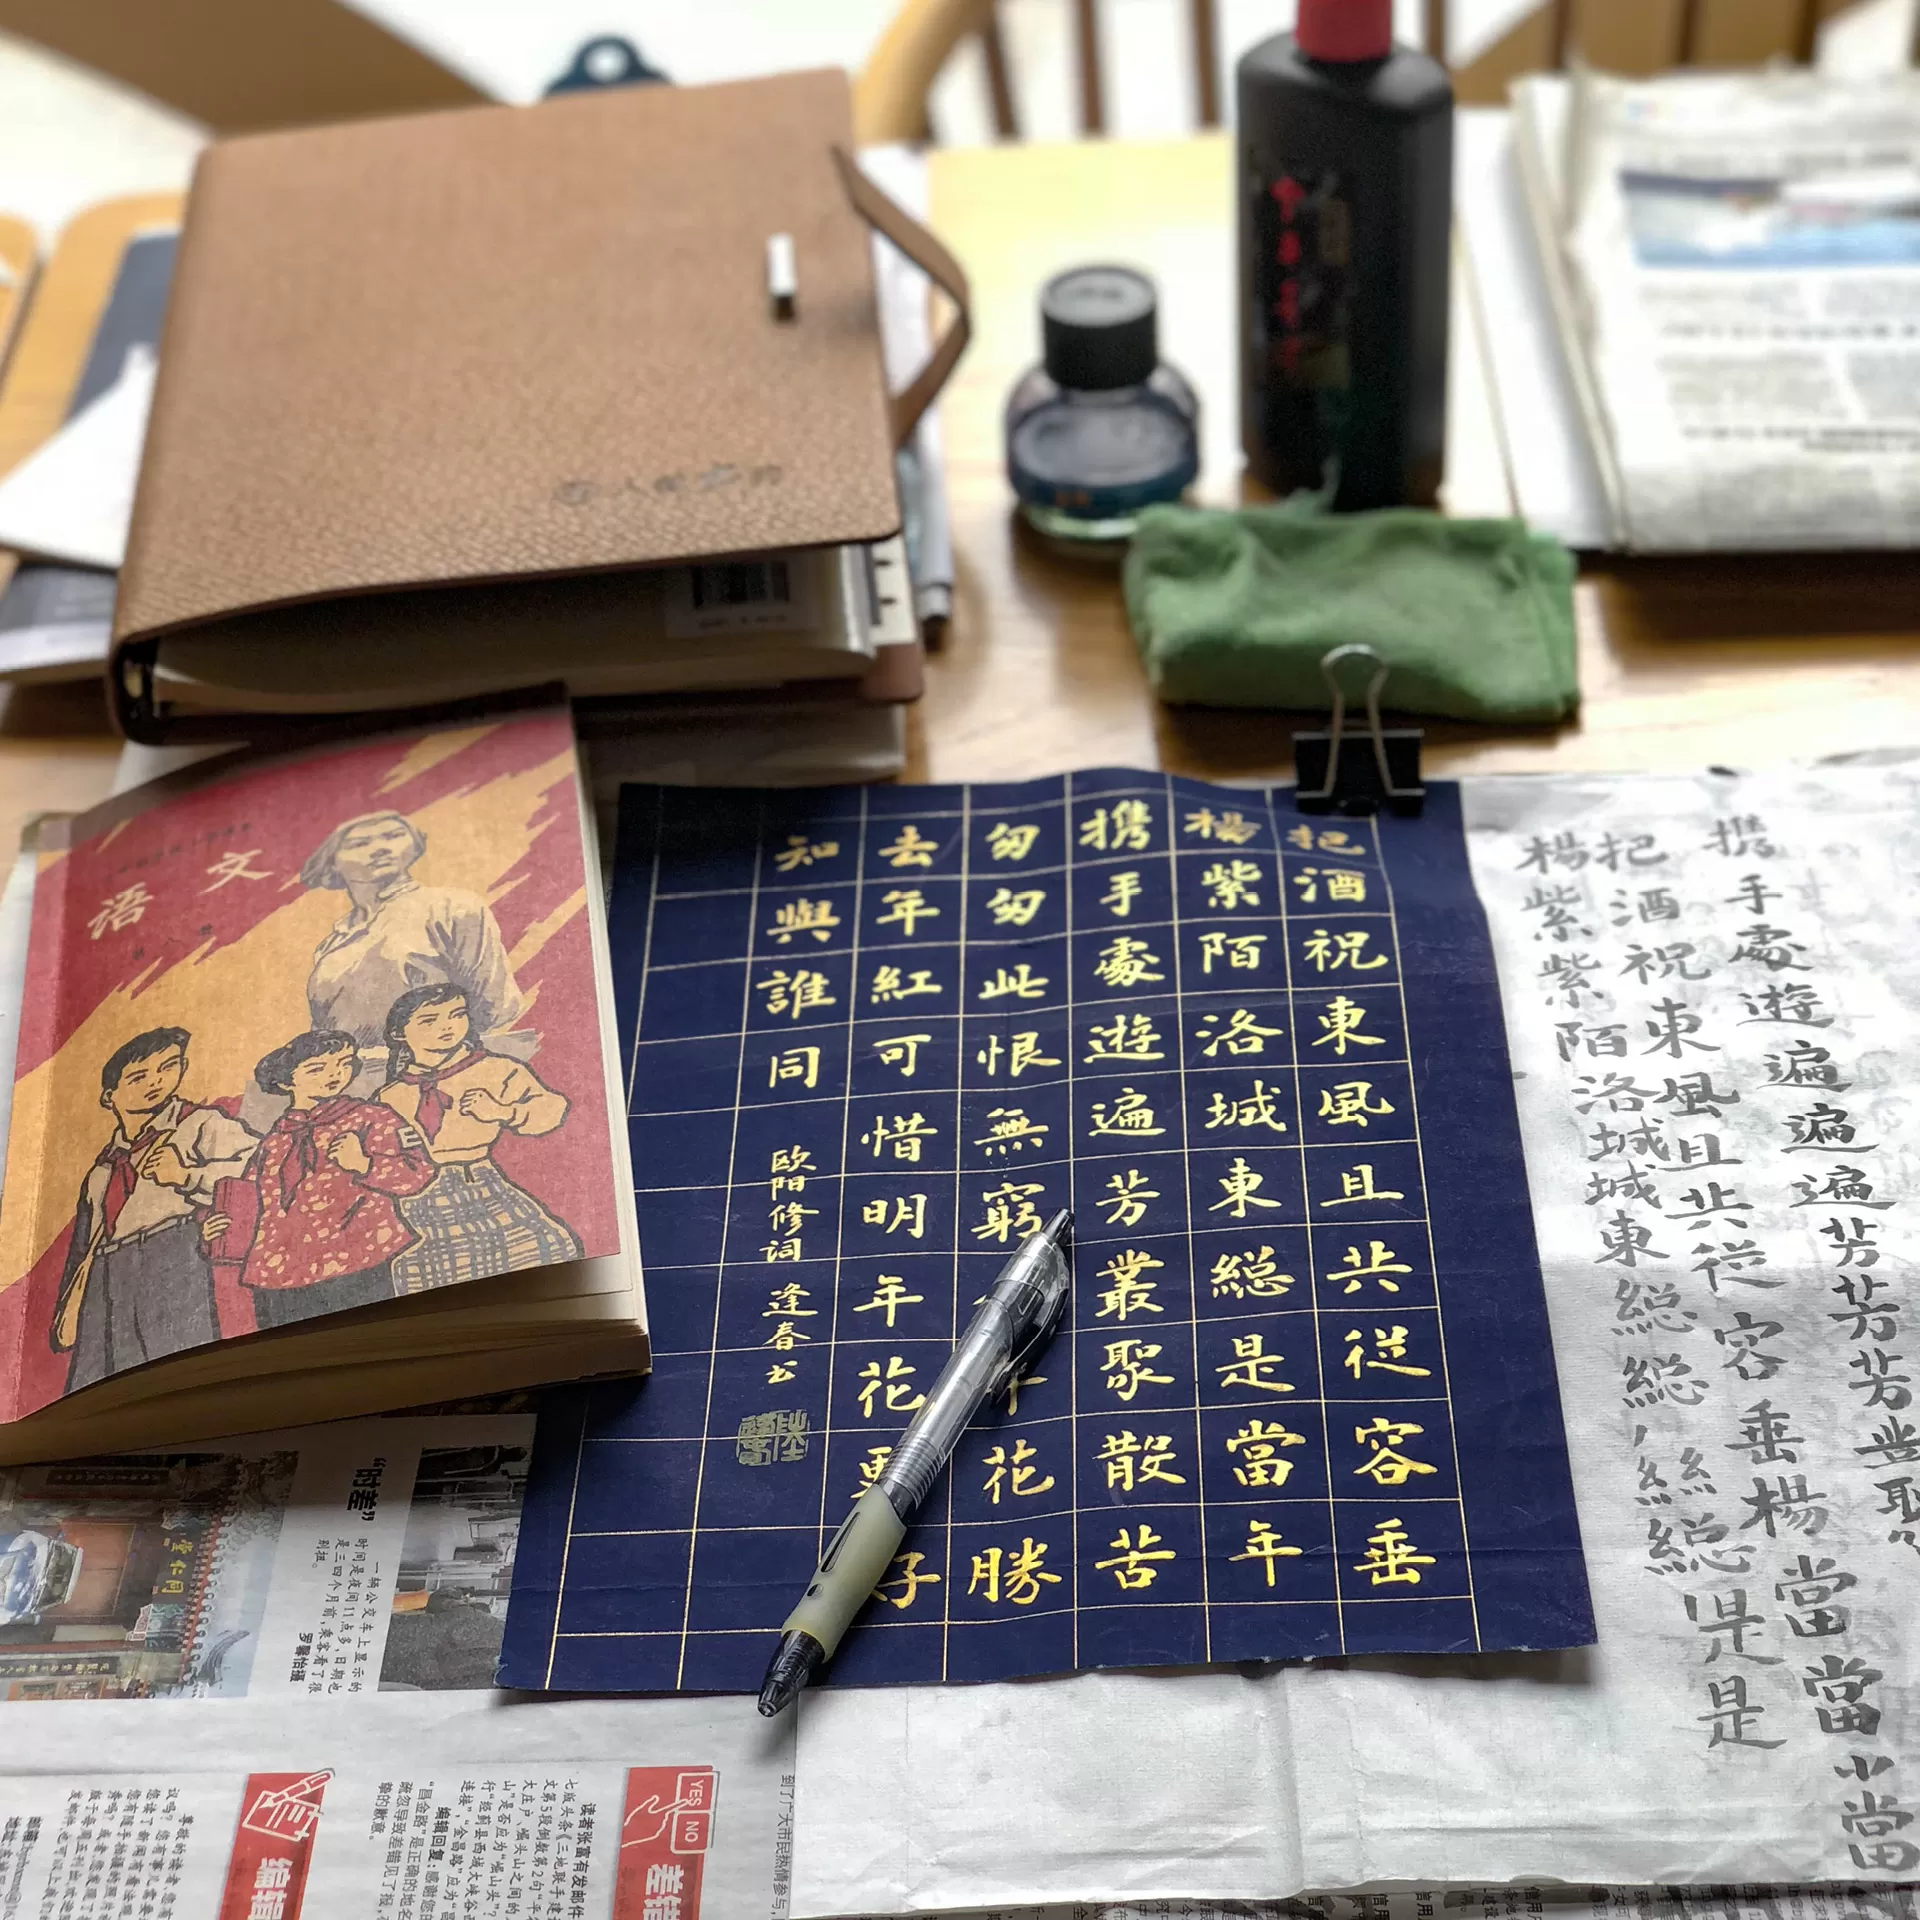 Auf einem Tisch liegen Schriftstücke und Bücher in Chinesischer Sprache sowie Kaligraphie-Utensilien.